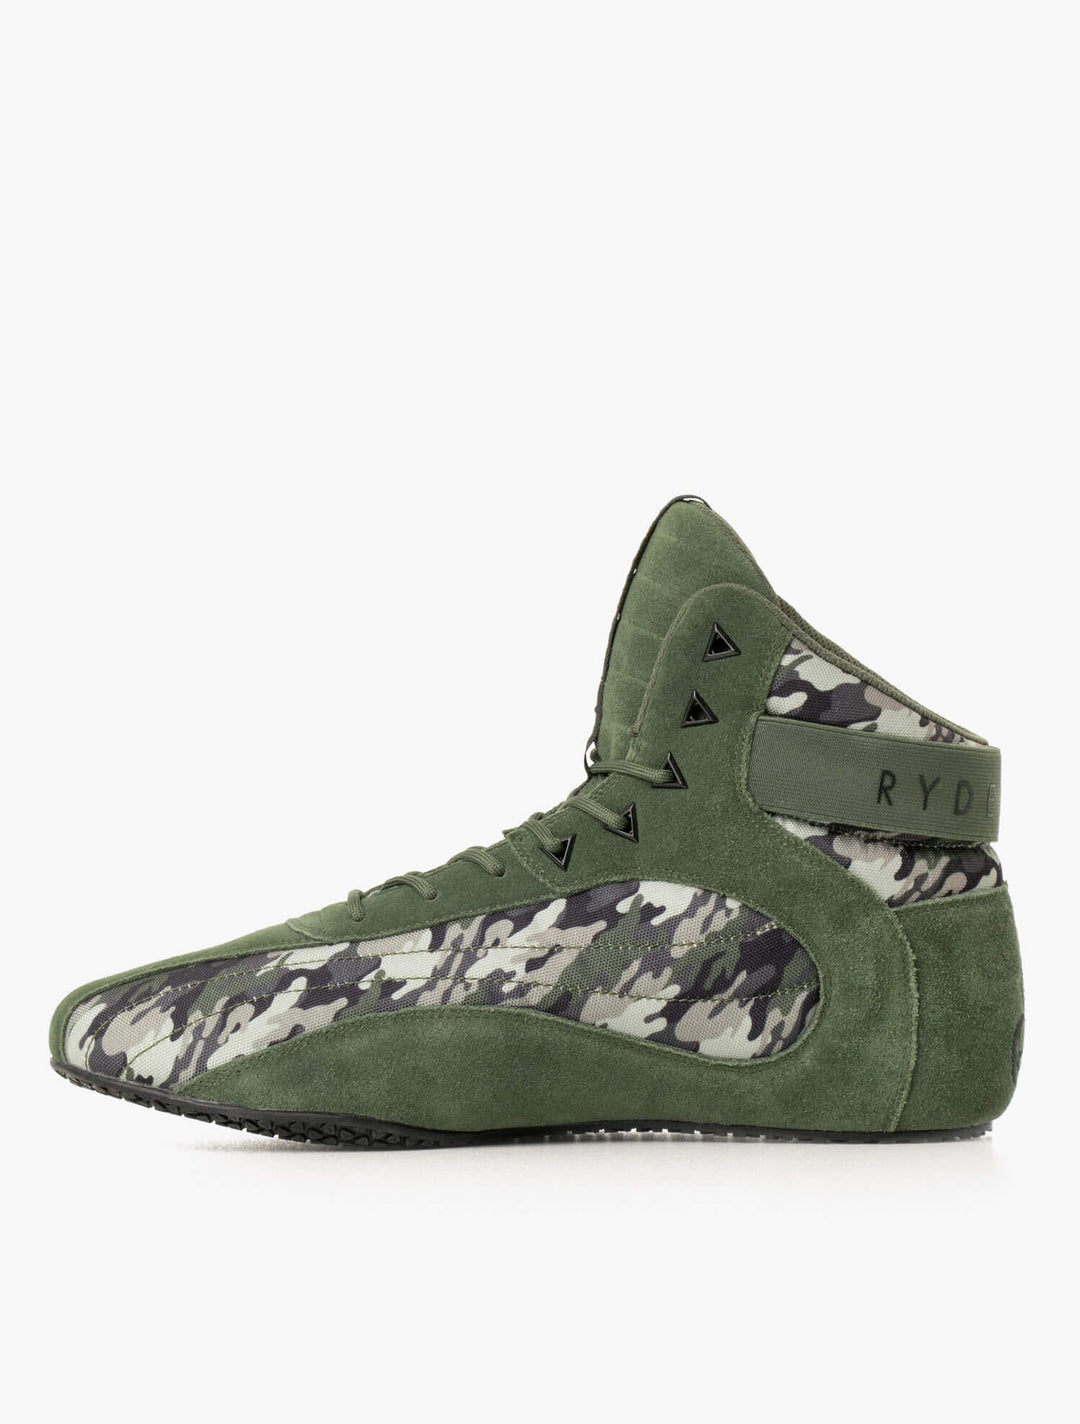 D-Mak II - Green Camo Shoes Ryderwear 